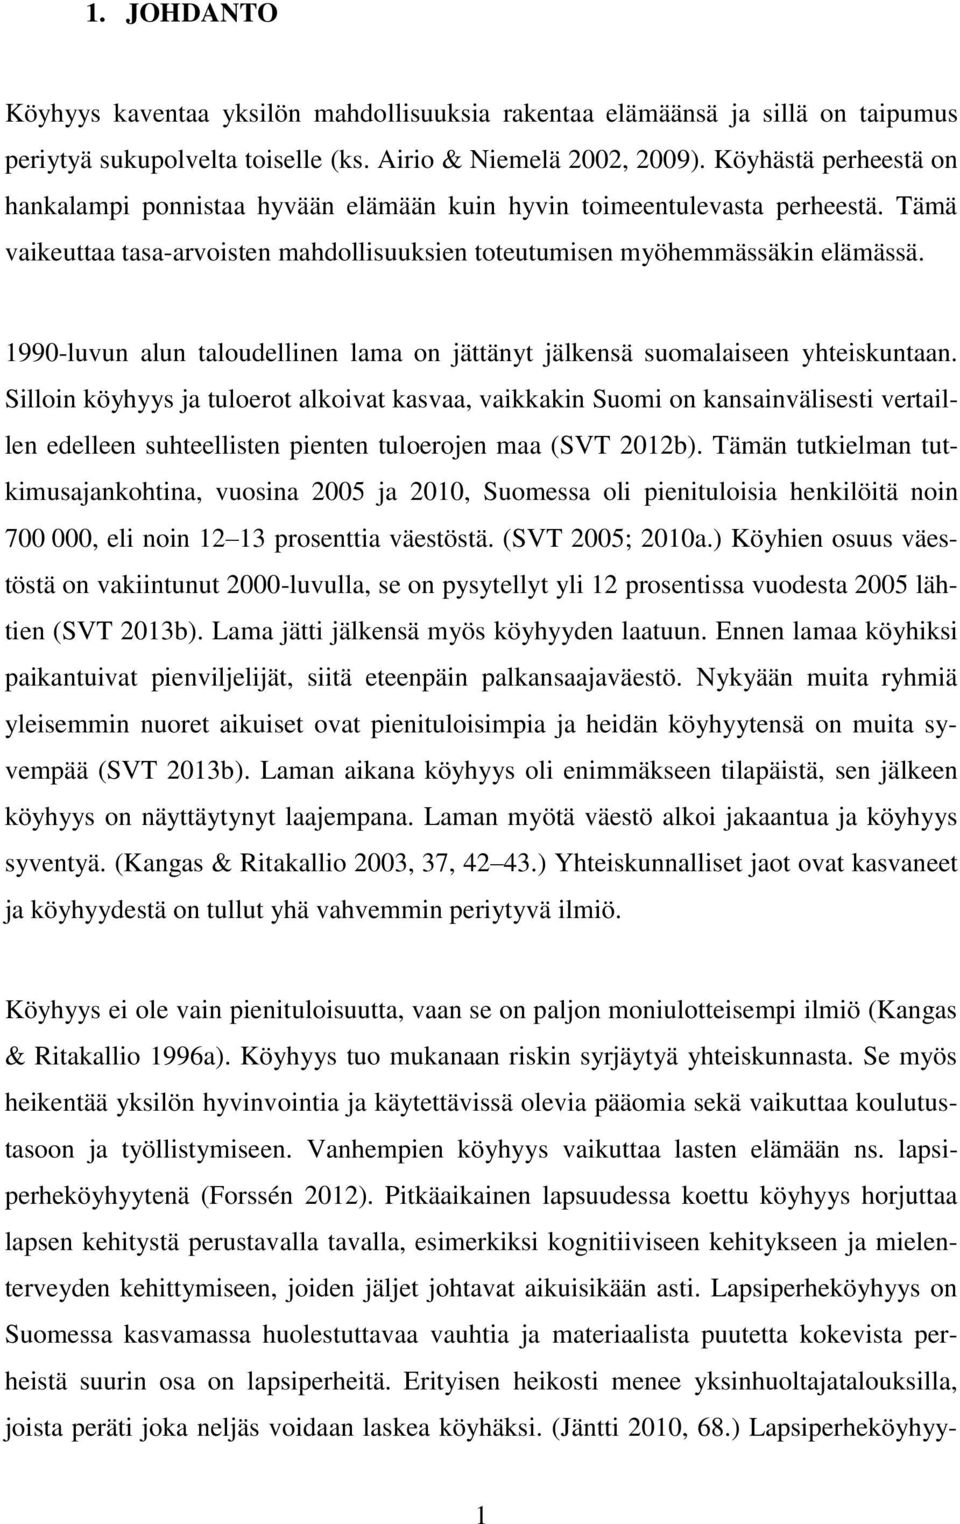 1990-luvun alun taloudellinen lama on jättänyt jälkensä suomalaiseen yhteiskuntaan.